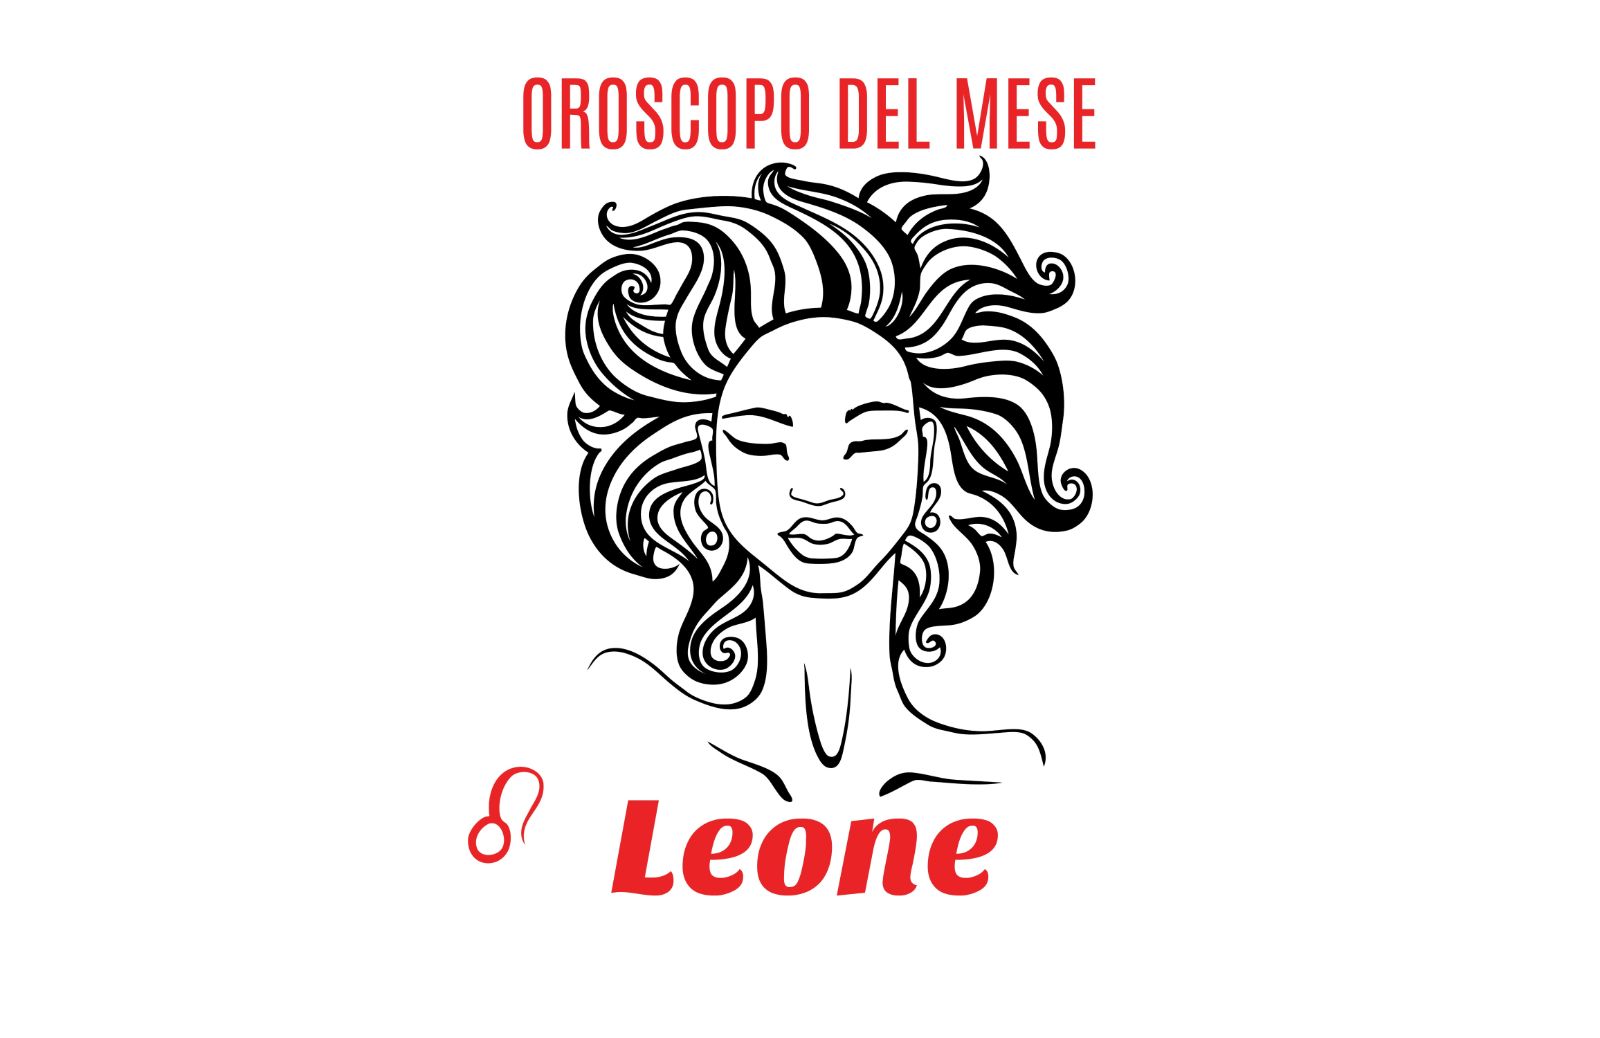 Oroscopo del mese: Leone - aprile 2020